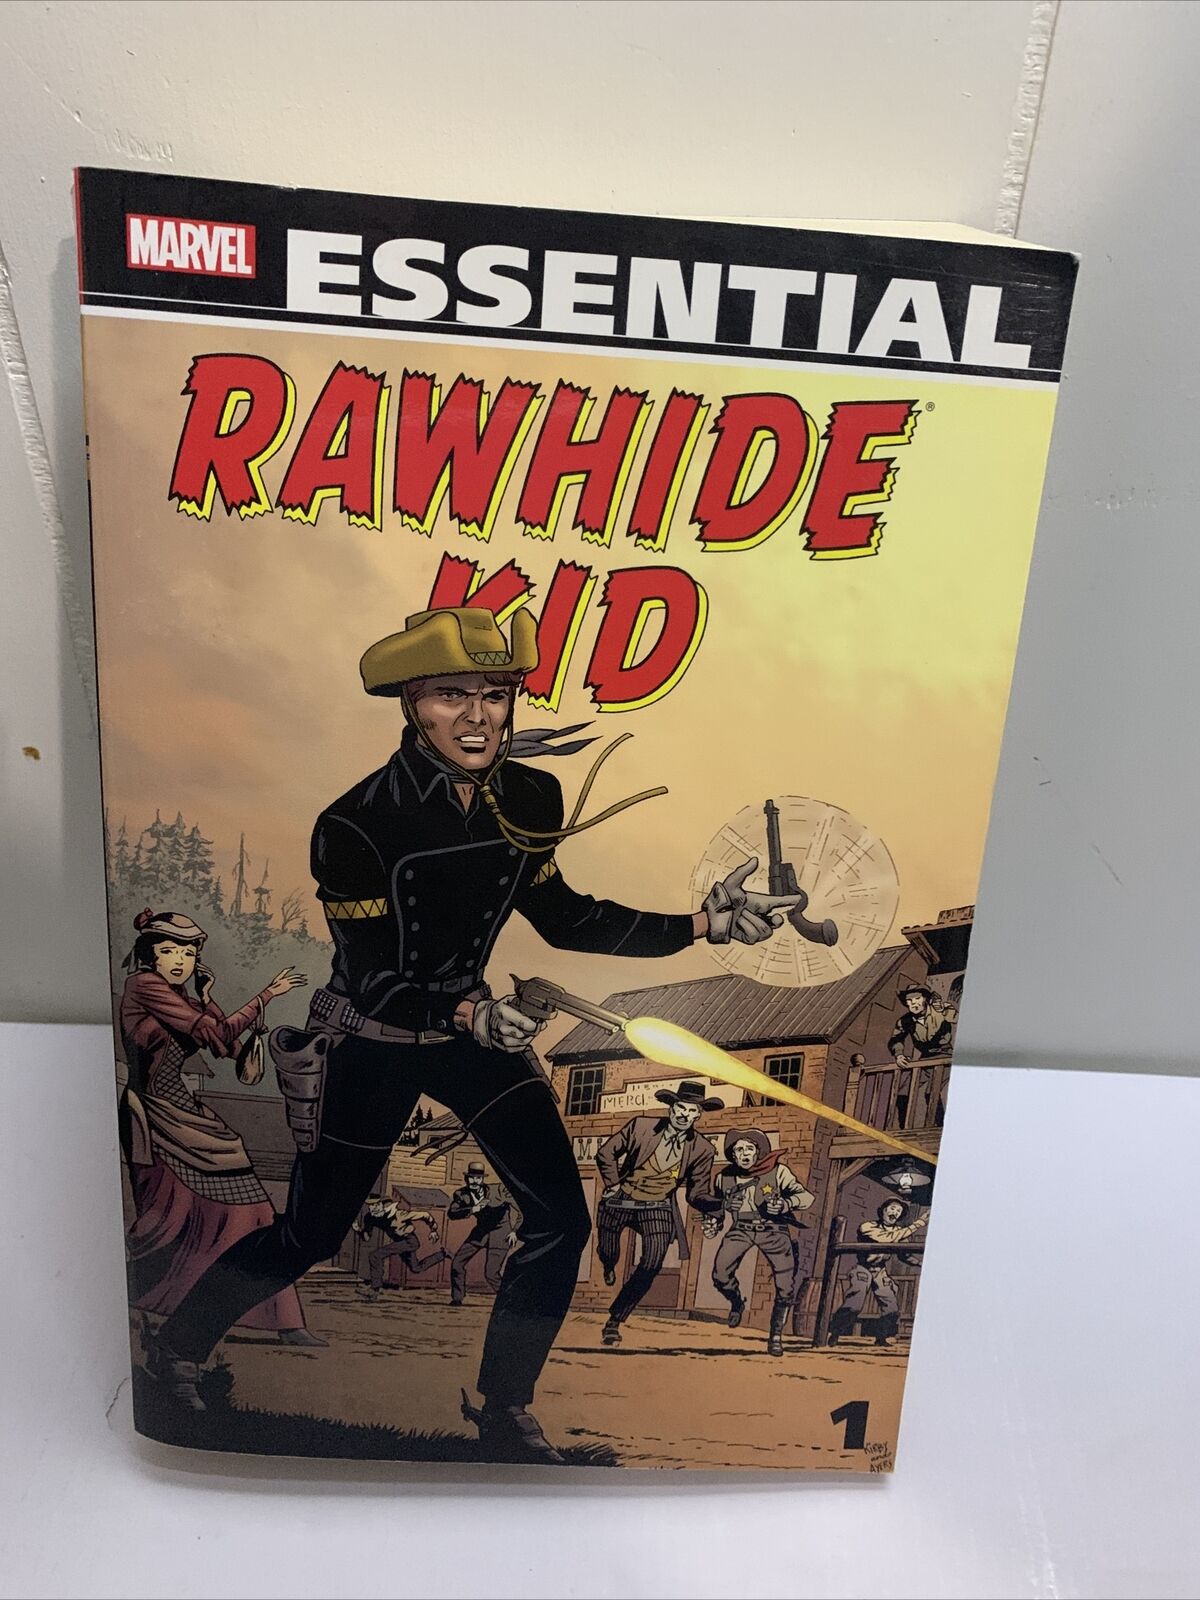 Essential Rawhide Kid #1 (Marvel, December 2011)